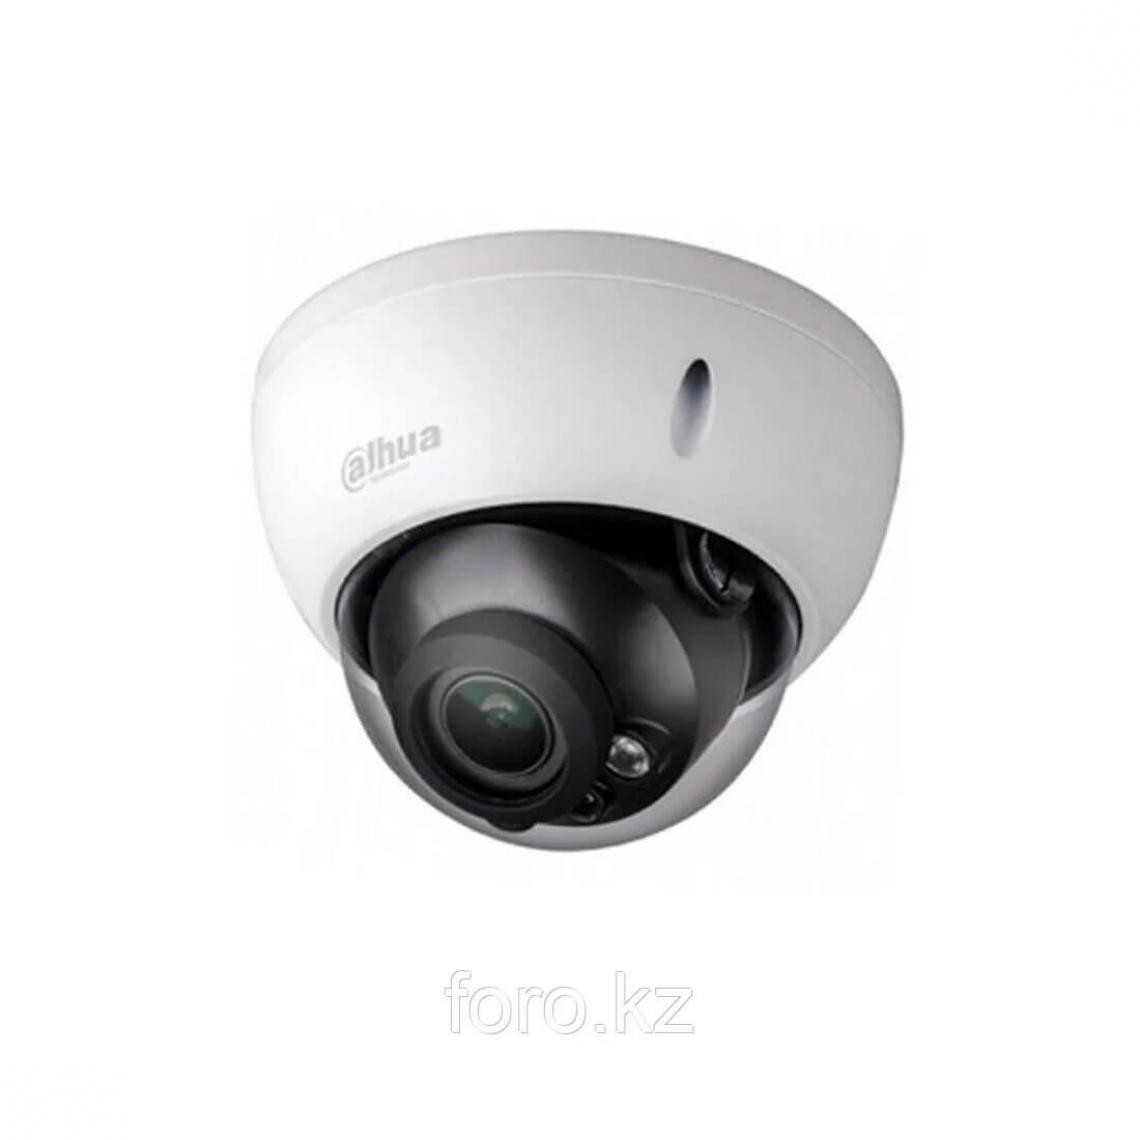 Dahua - Dahua - DH-IPC-HDBW3441EP-S-0280B - Caméra de surveillance connectée